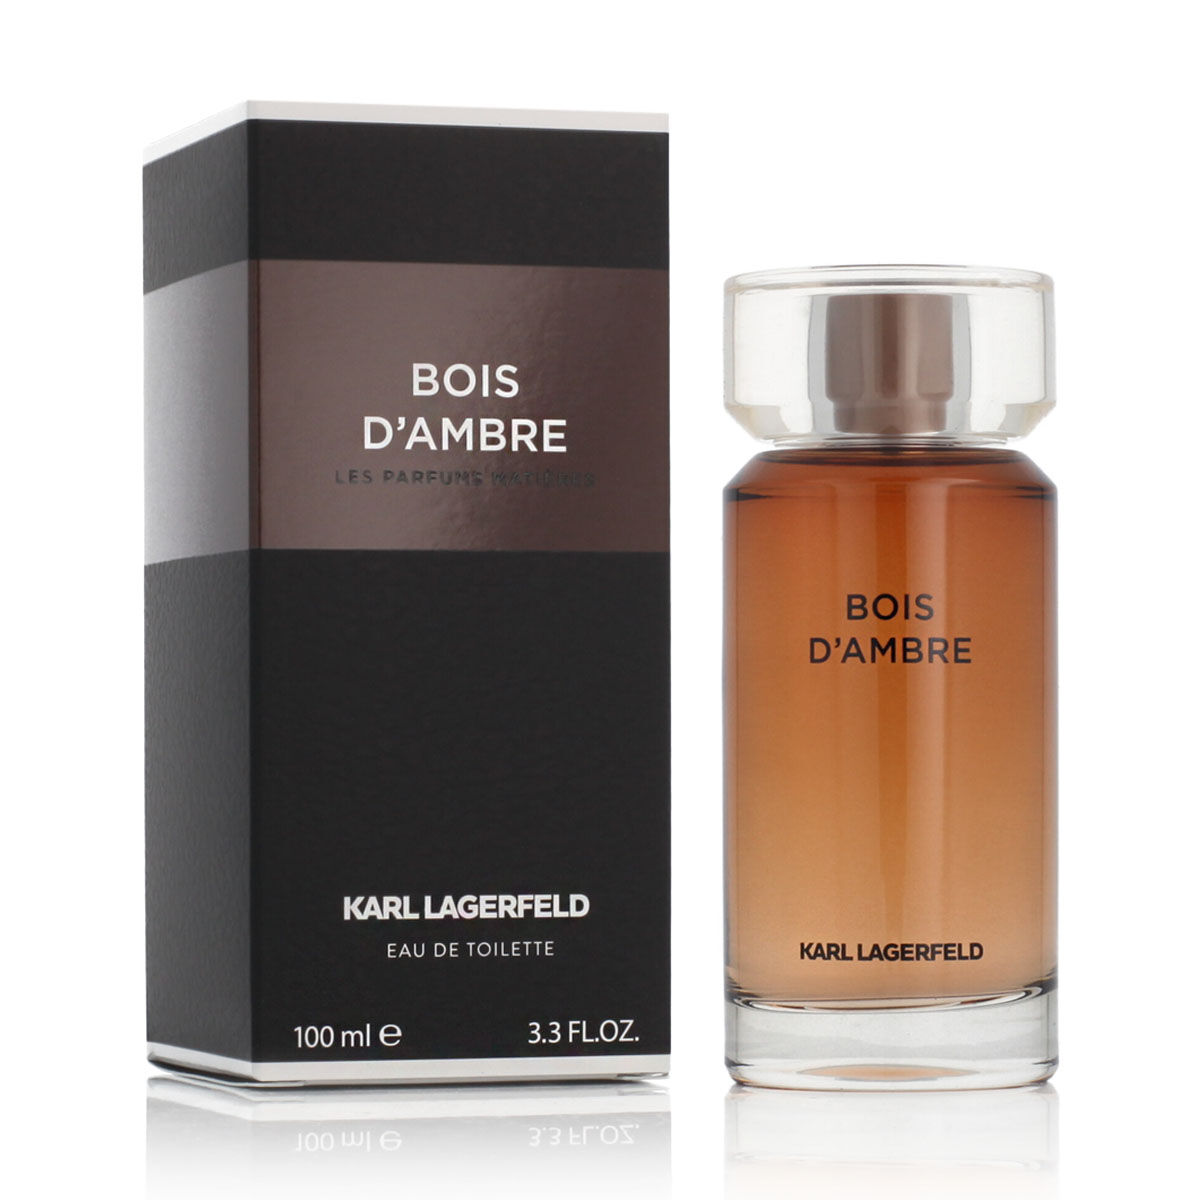 Parfum Homme Karl Lagerfeld EDT Bois d'Ambre 100 ml